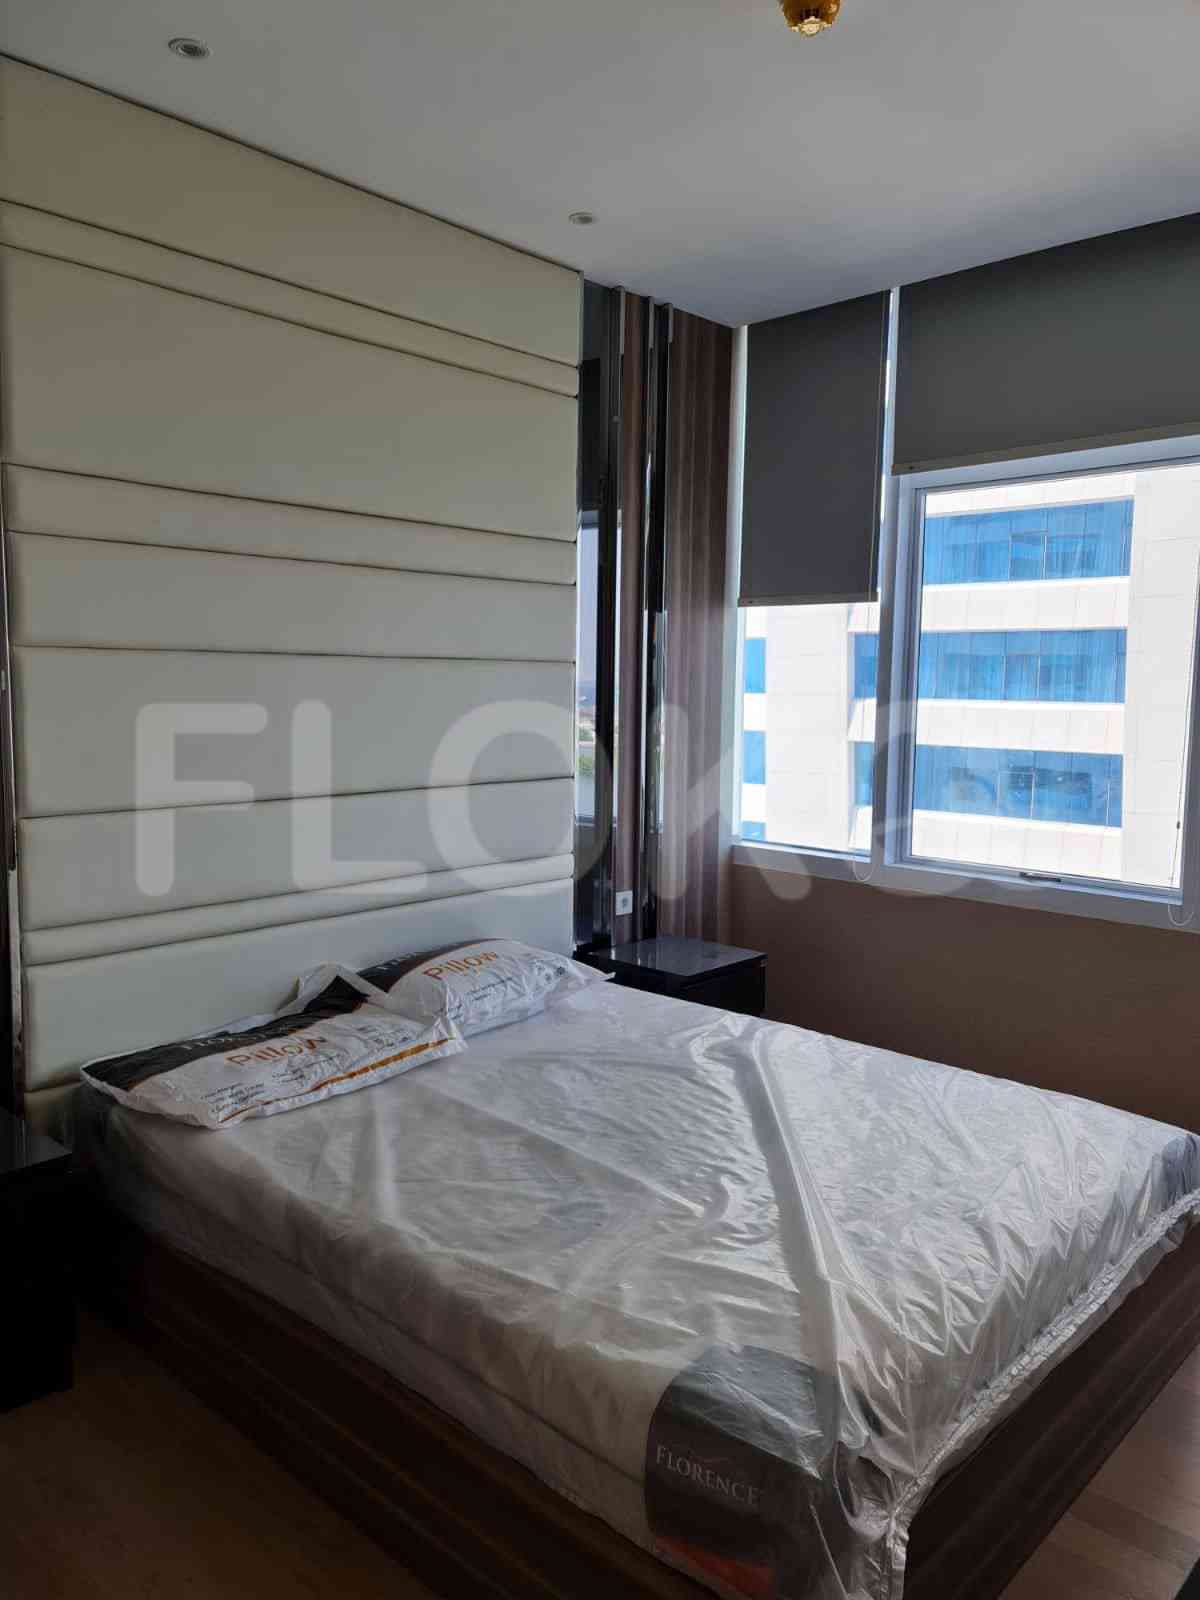 4 Bedroom on 21st Floor for Rent in Regatta - fplc82 3